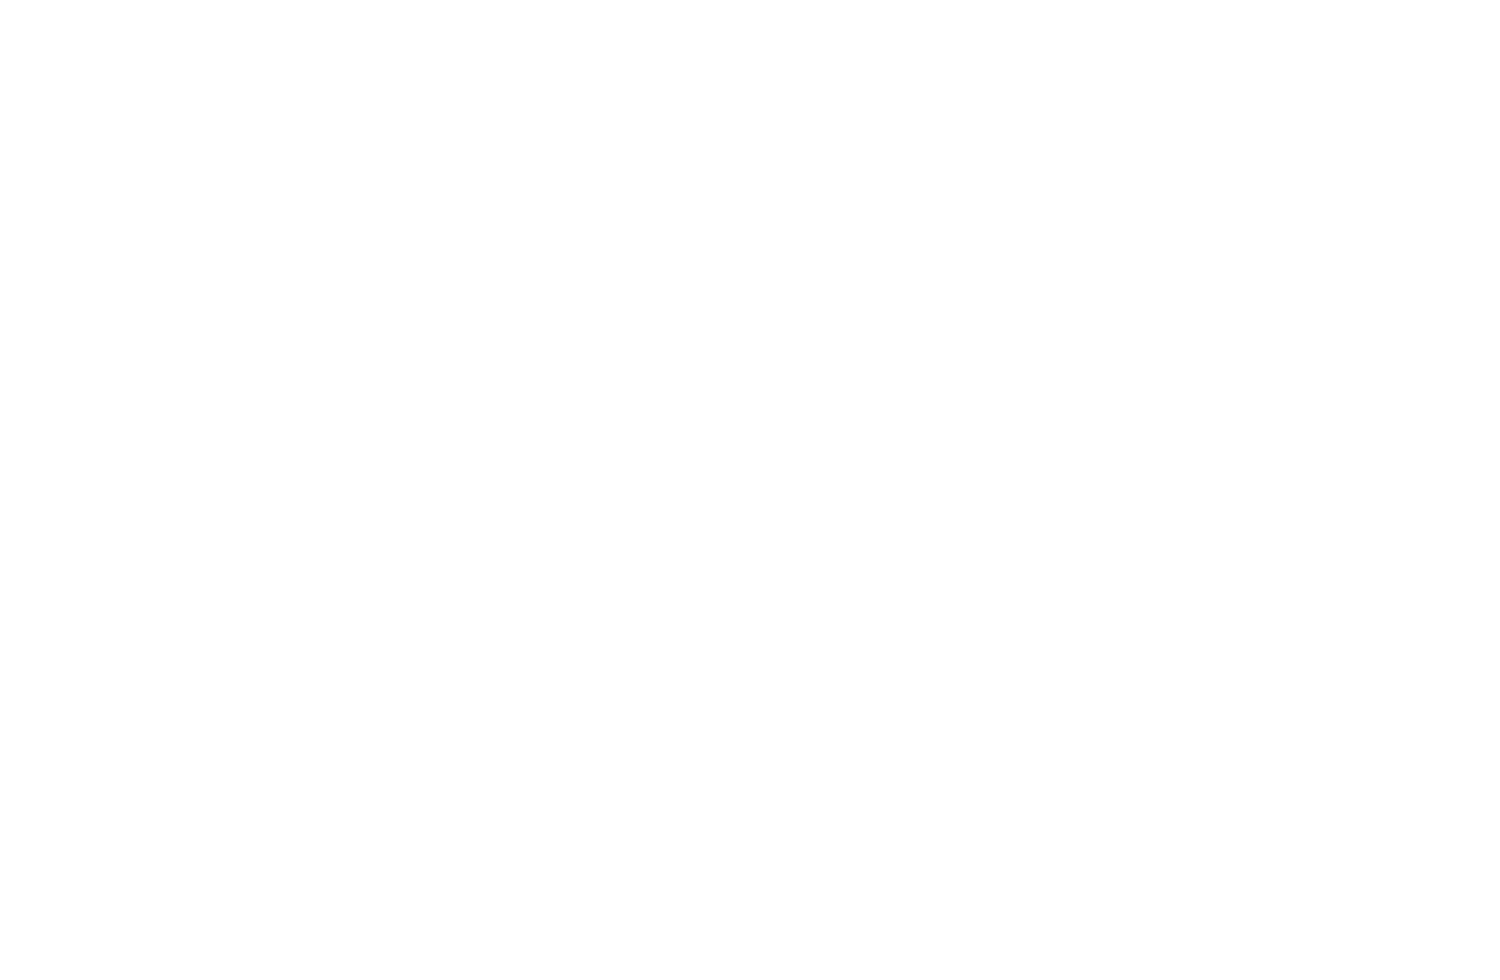 Robbie Fitzsimmons